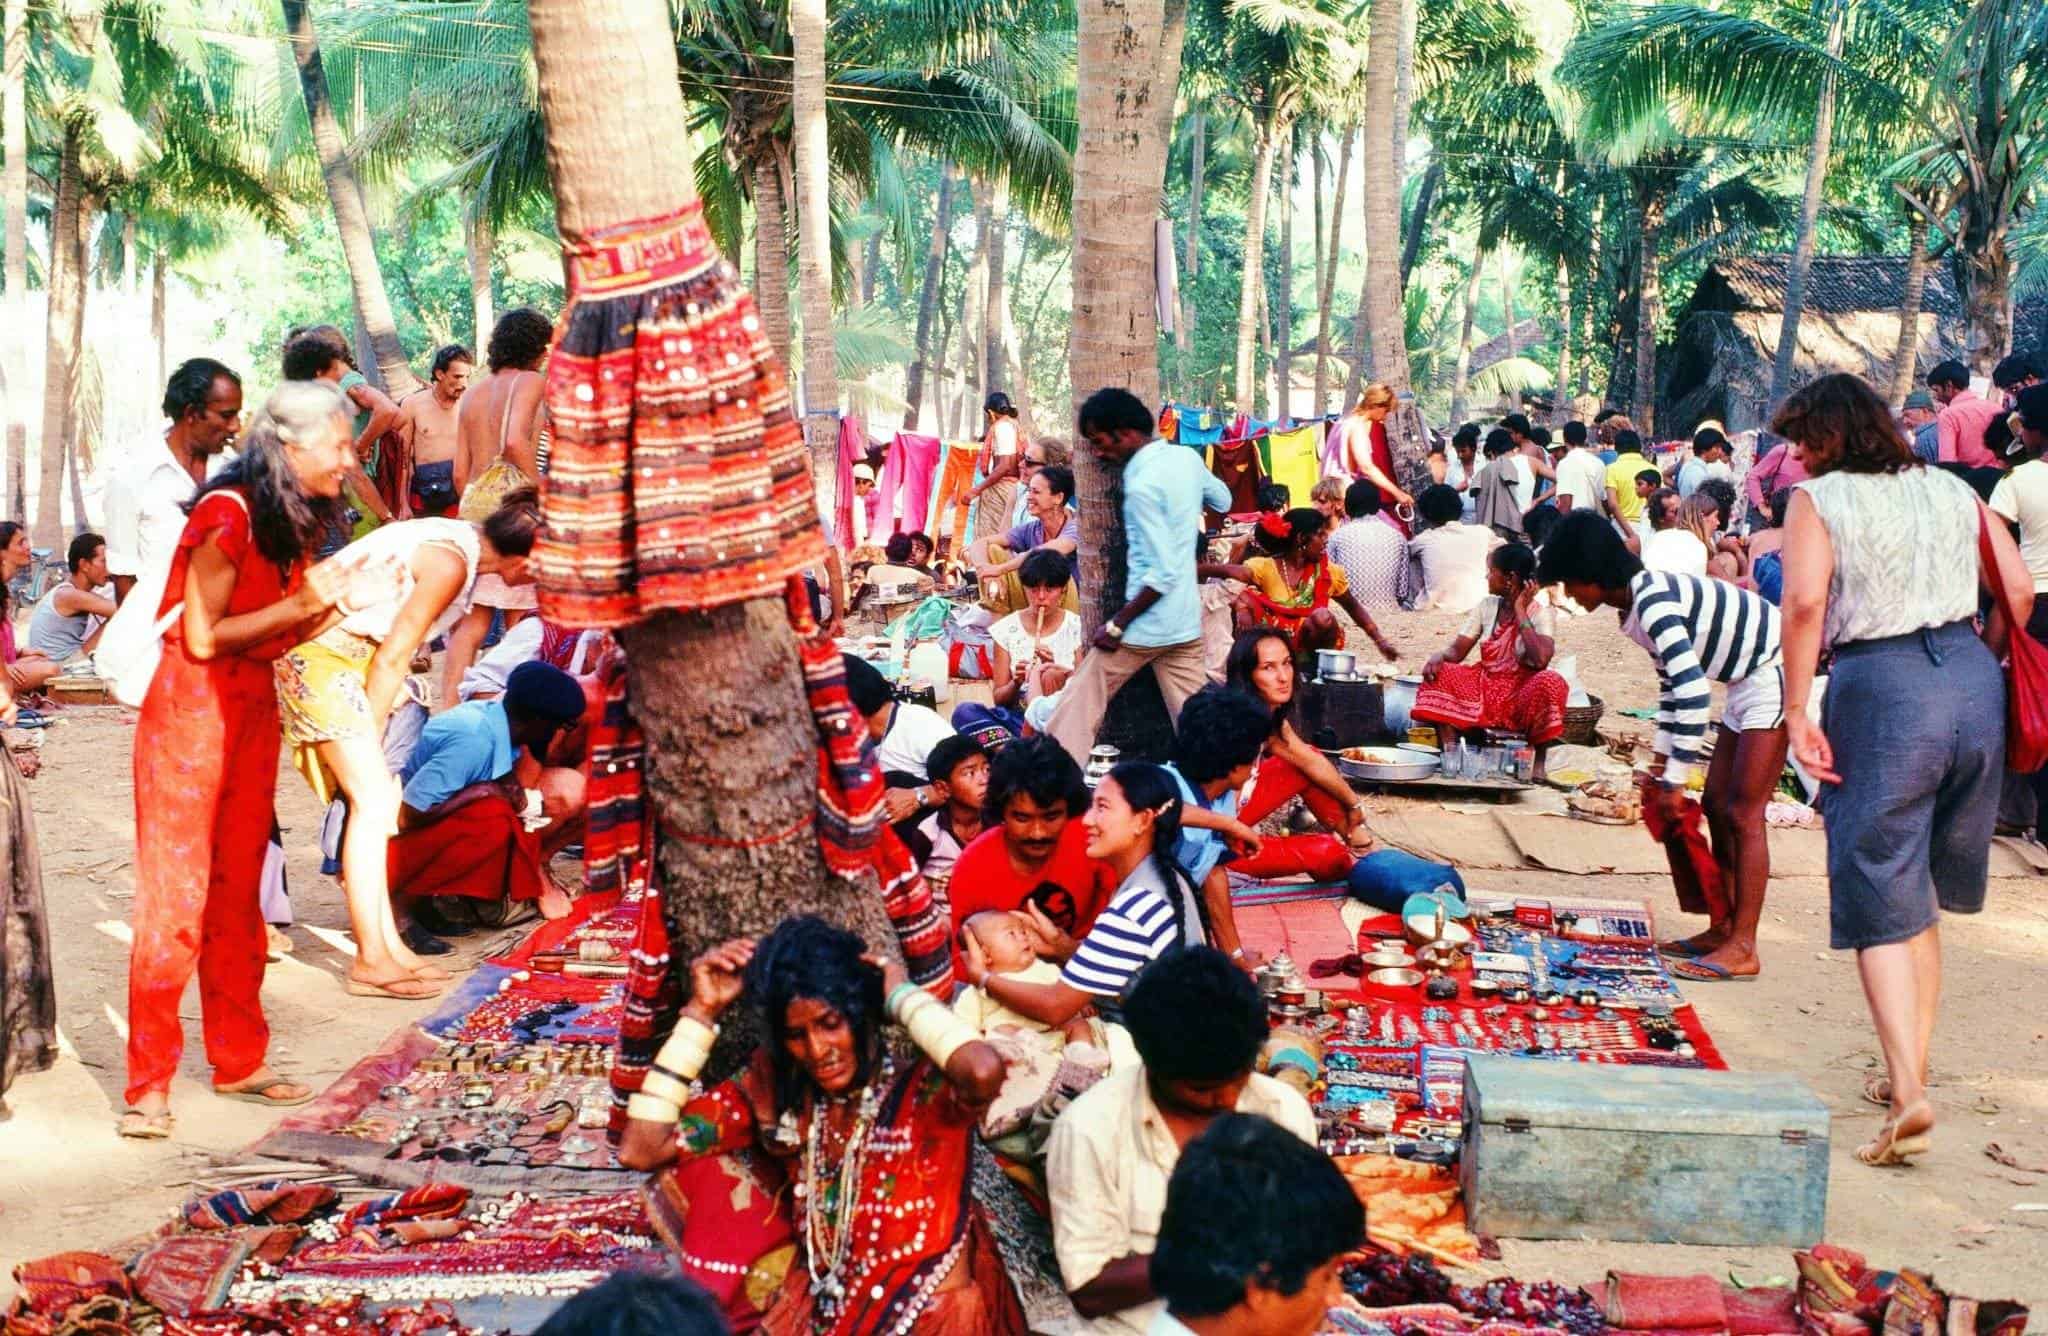 Anjuna flea market, Гоа, Индия, 1982.